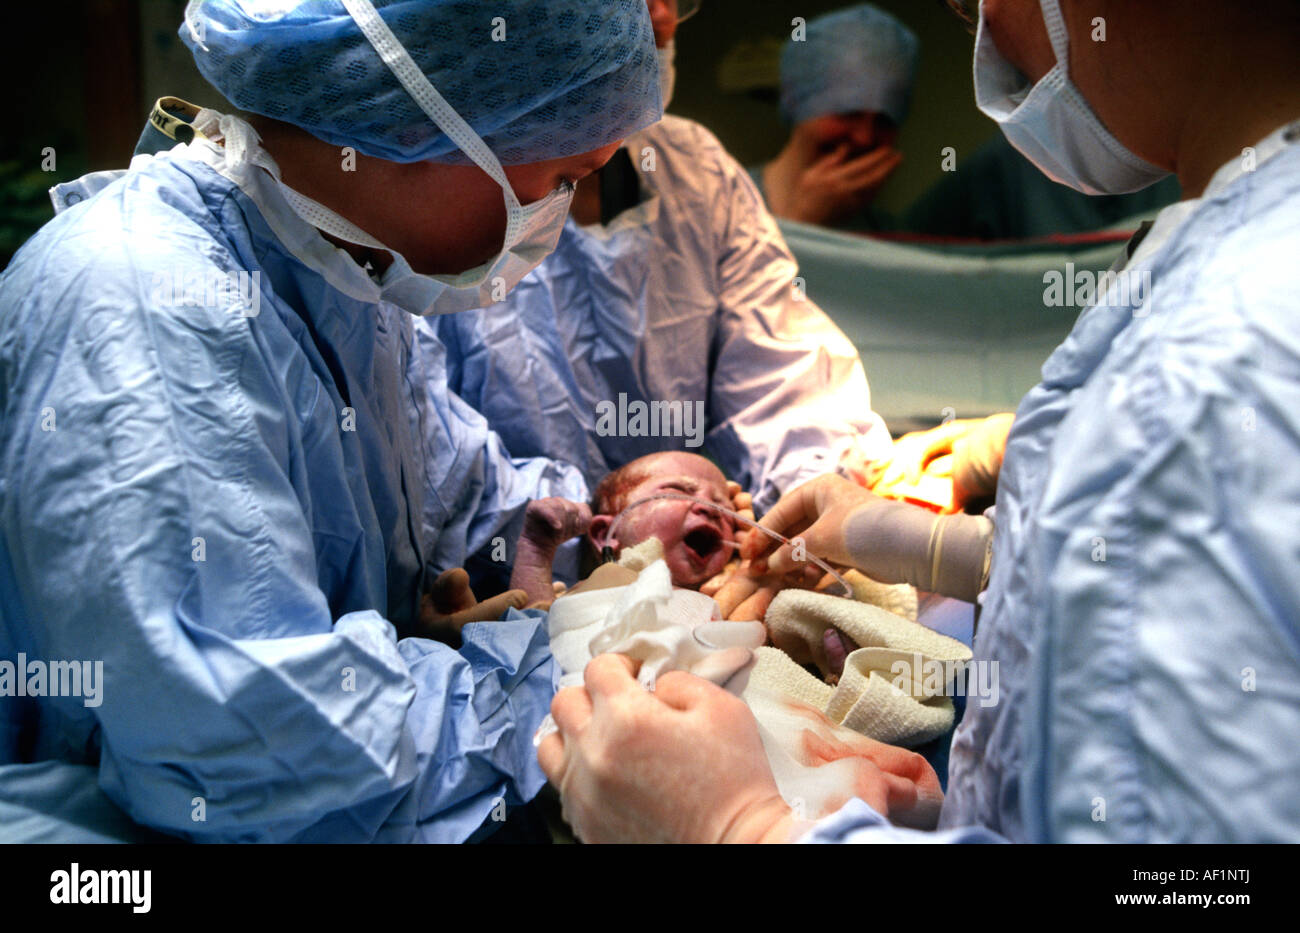 Absaugen, Schleim von Neugeborenen nach Kaiserschnitt Geburt  Stockfotografie - Alamy